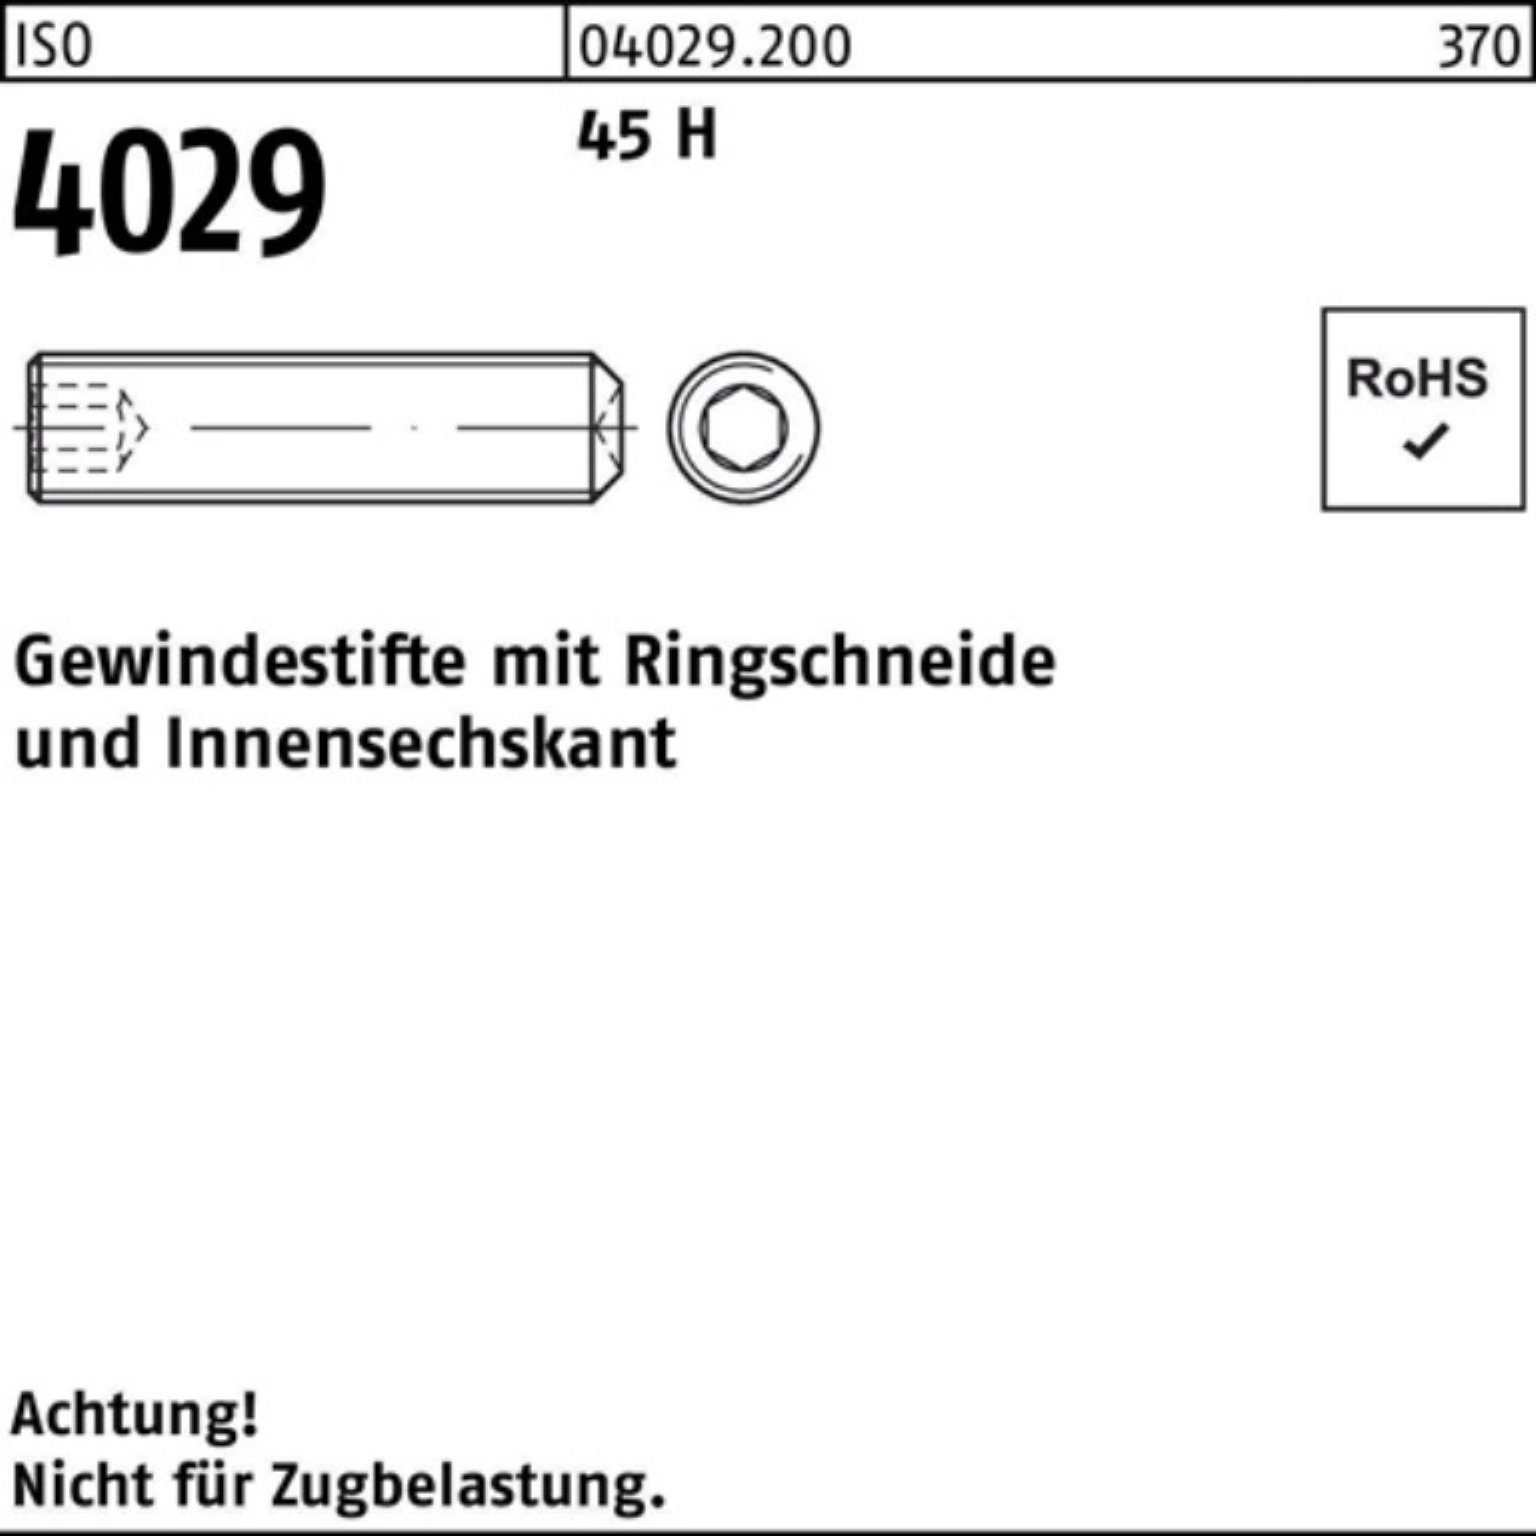 5 Pack ISO Gewindebolzen 35 100er M20x Reyher 45 H Ringschneide/Innen-6kt 4029 Gewindestift